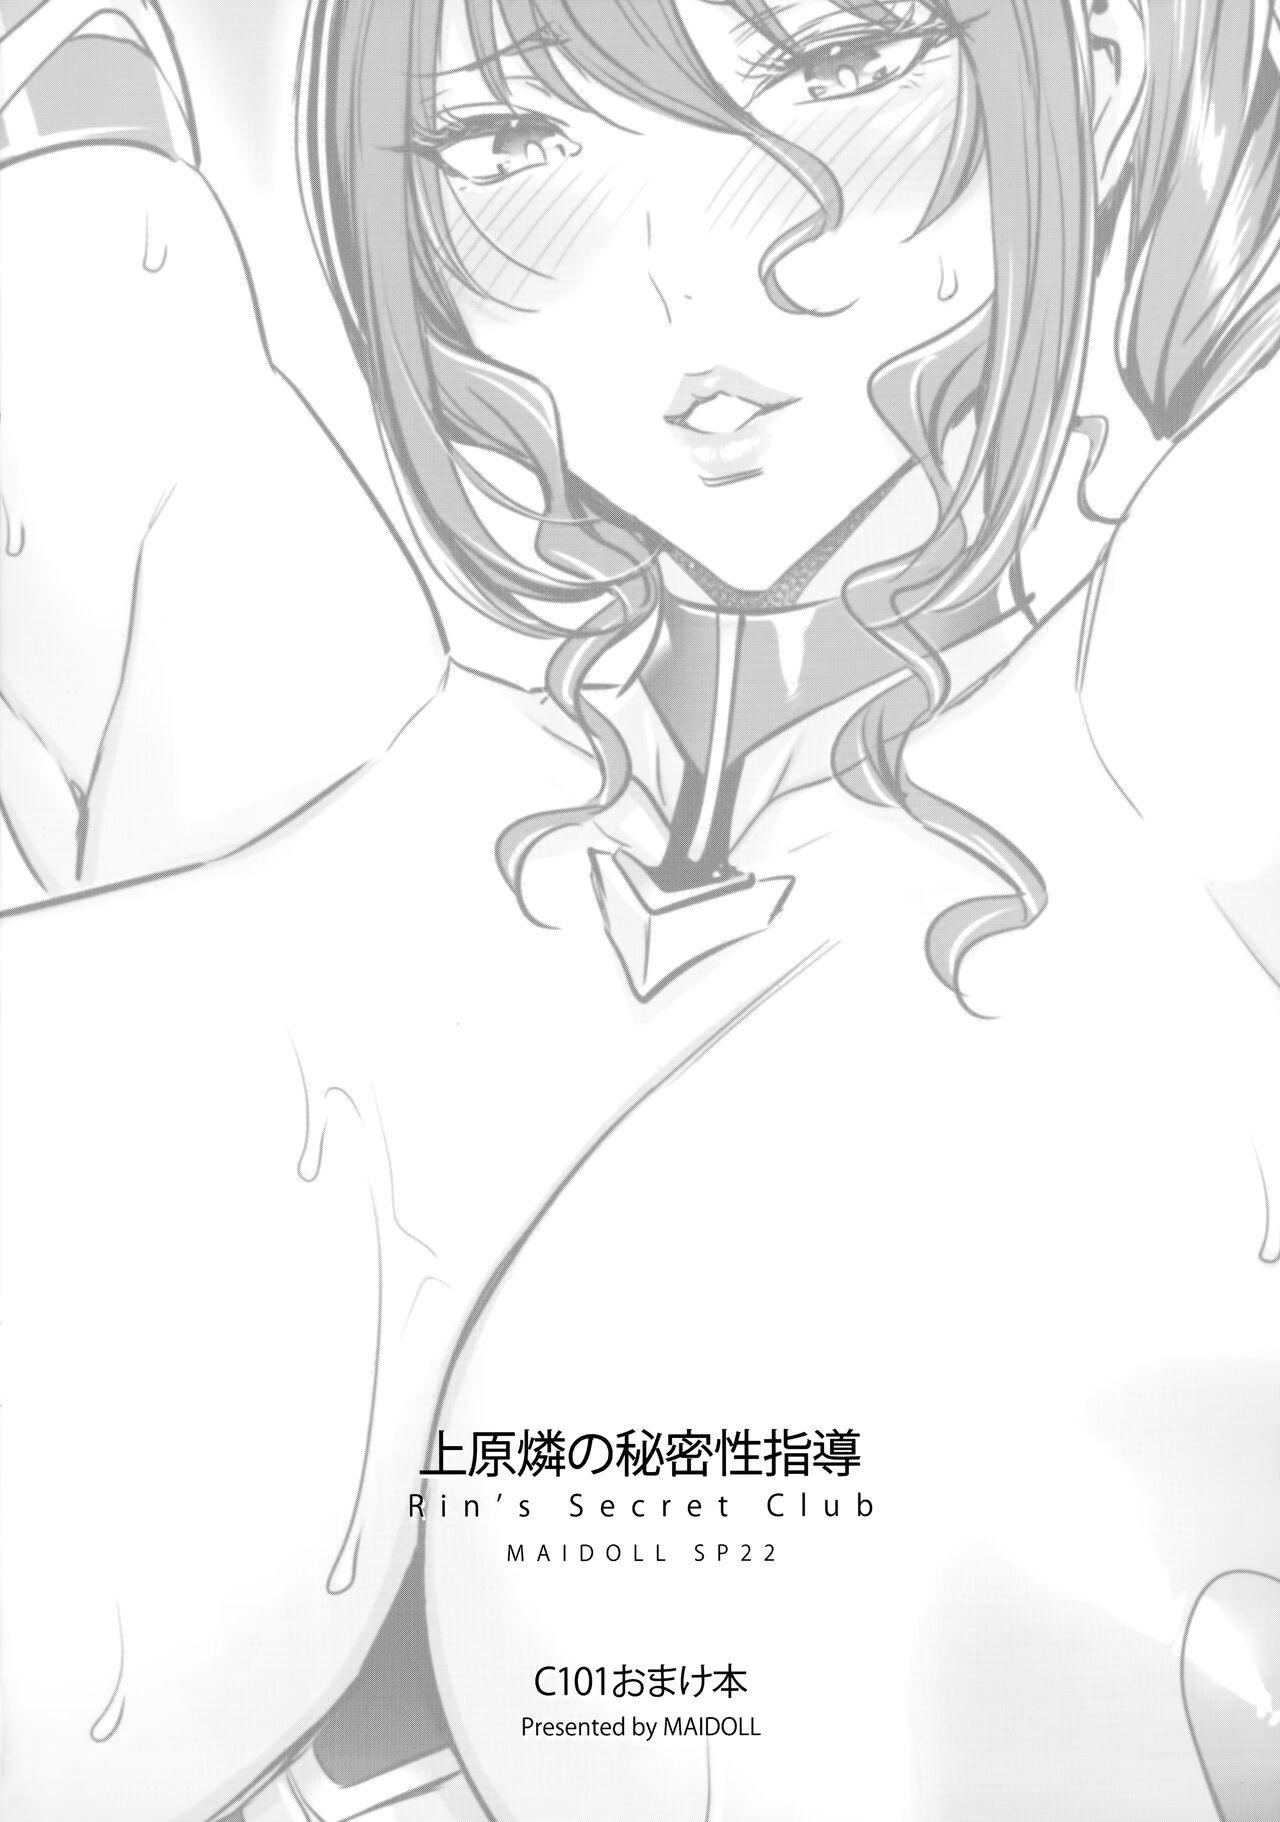 Uehara Rin no Himitsu Seishidou - Rin's Secret Club 7